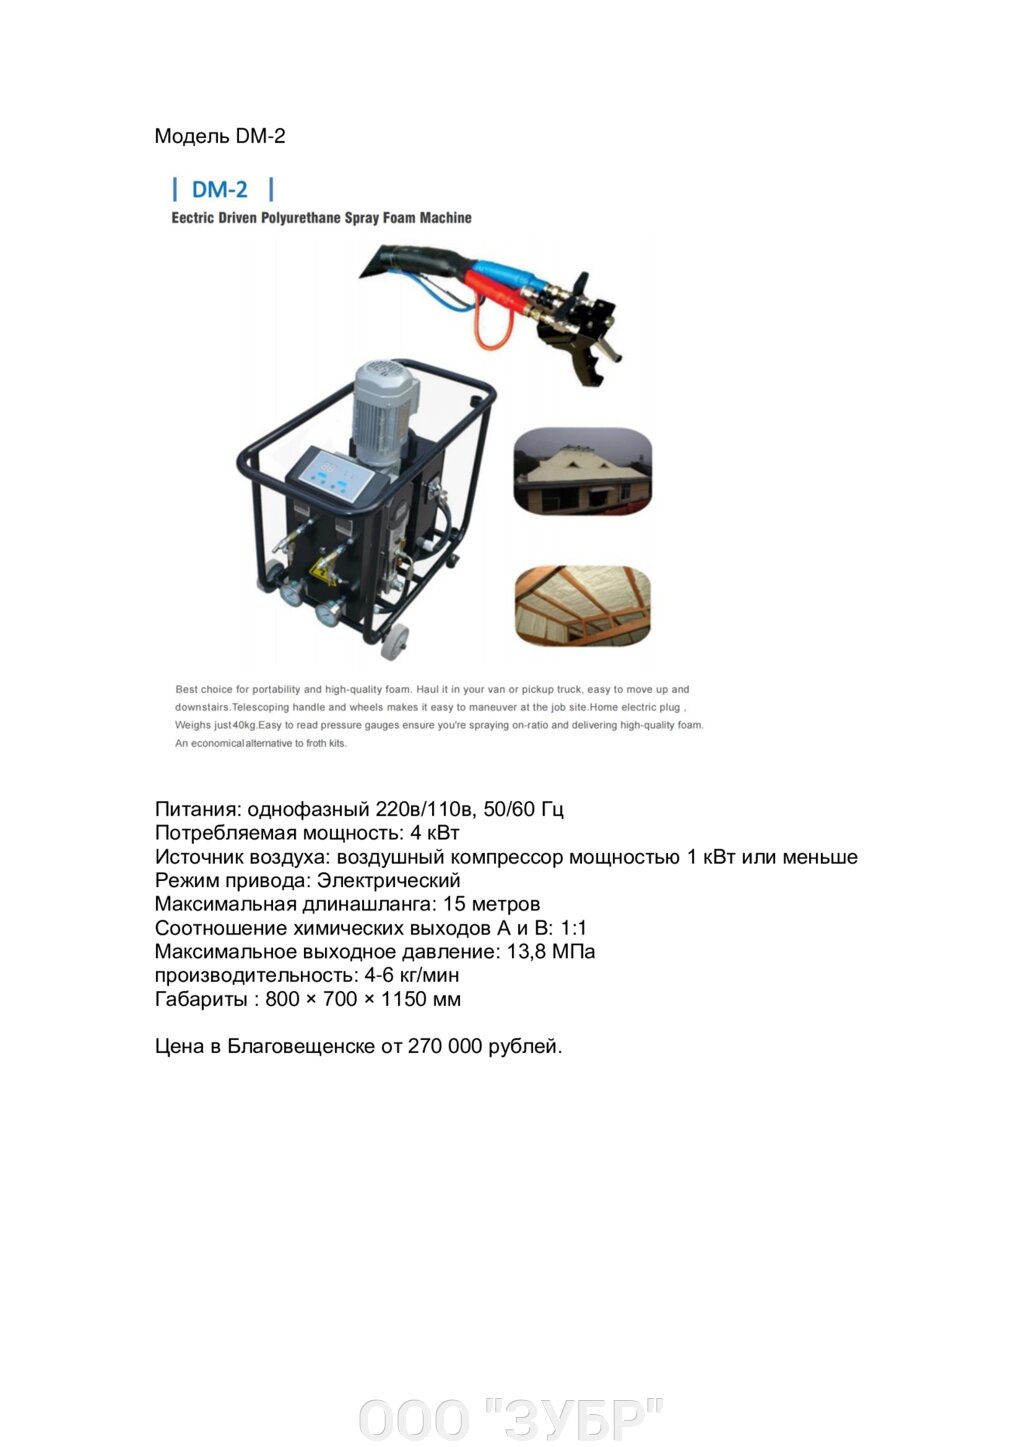 Машина для распыления полиуретановой пены с электрическим приводом DM-2 от компании ООО "ЗУБР" - фото 1